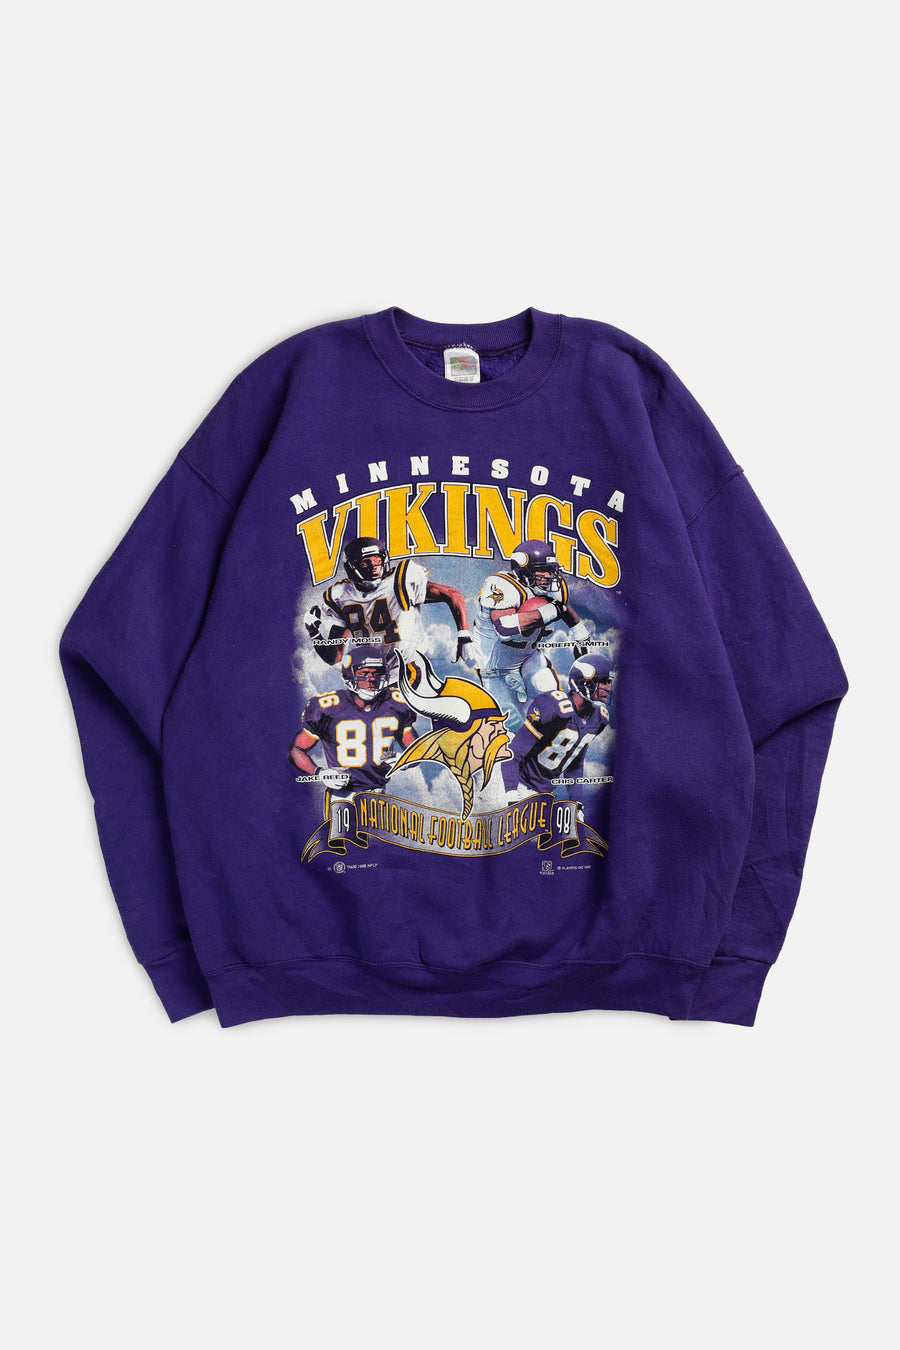 Vintage Minnesota Vikings NFL Sweatshirt - XL